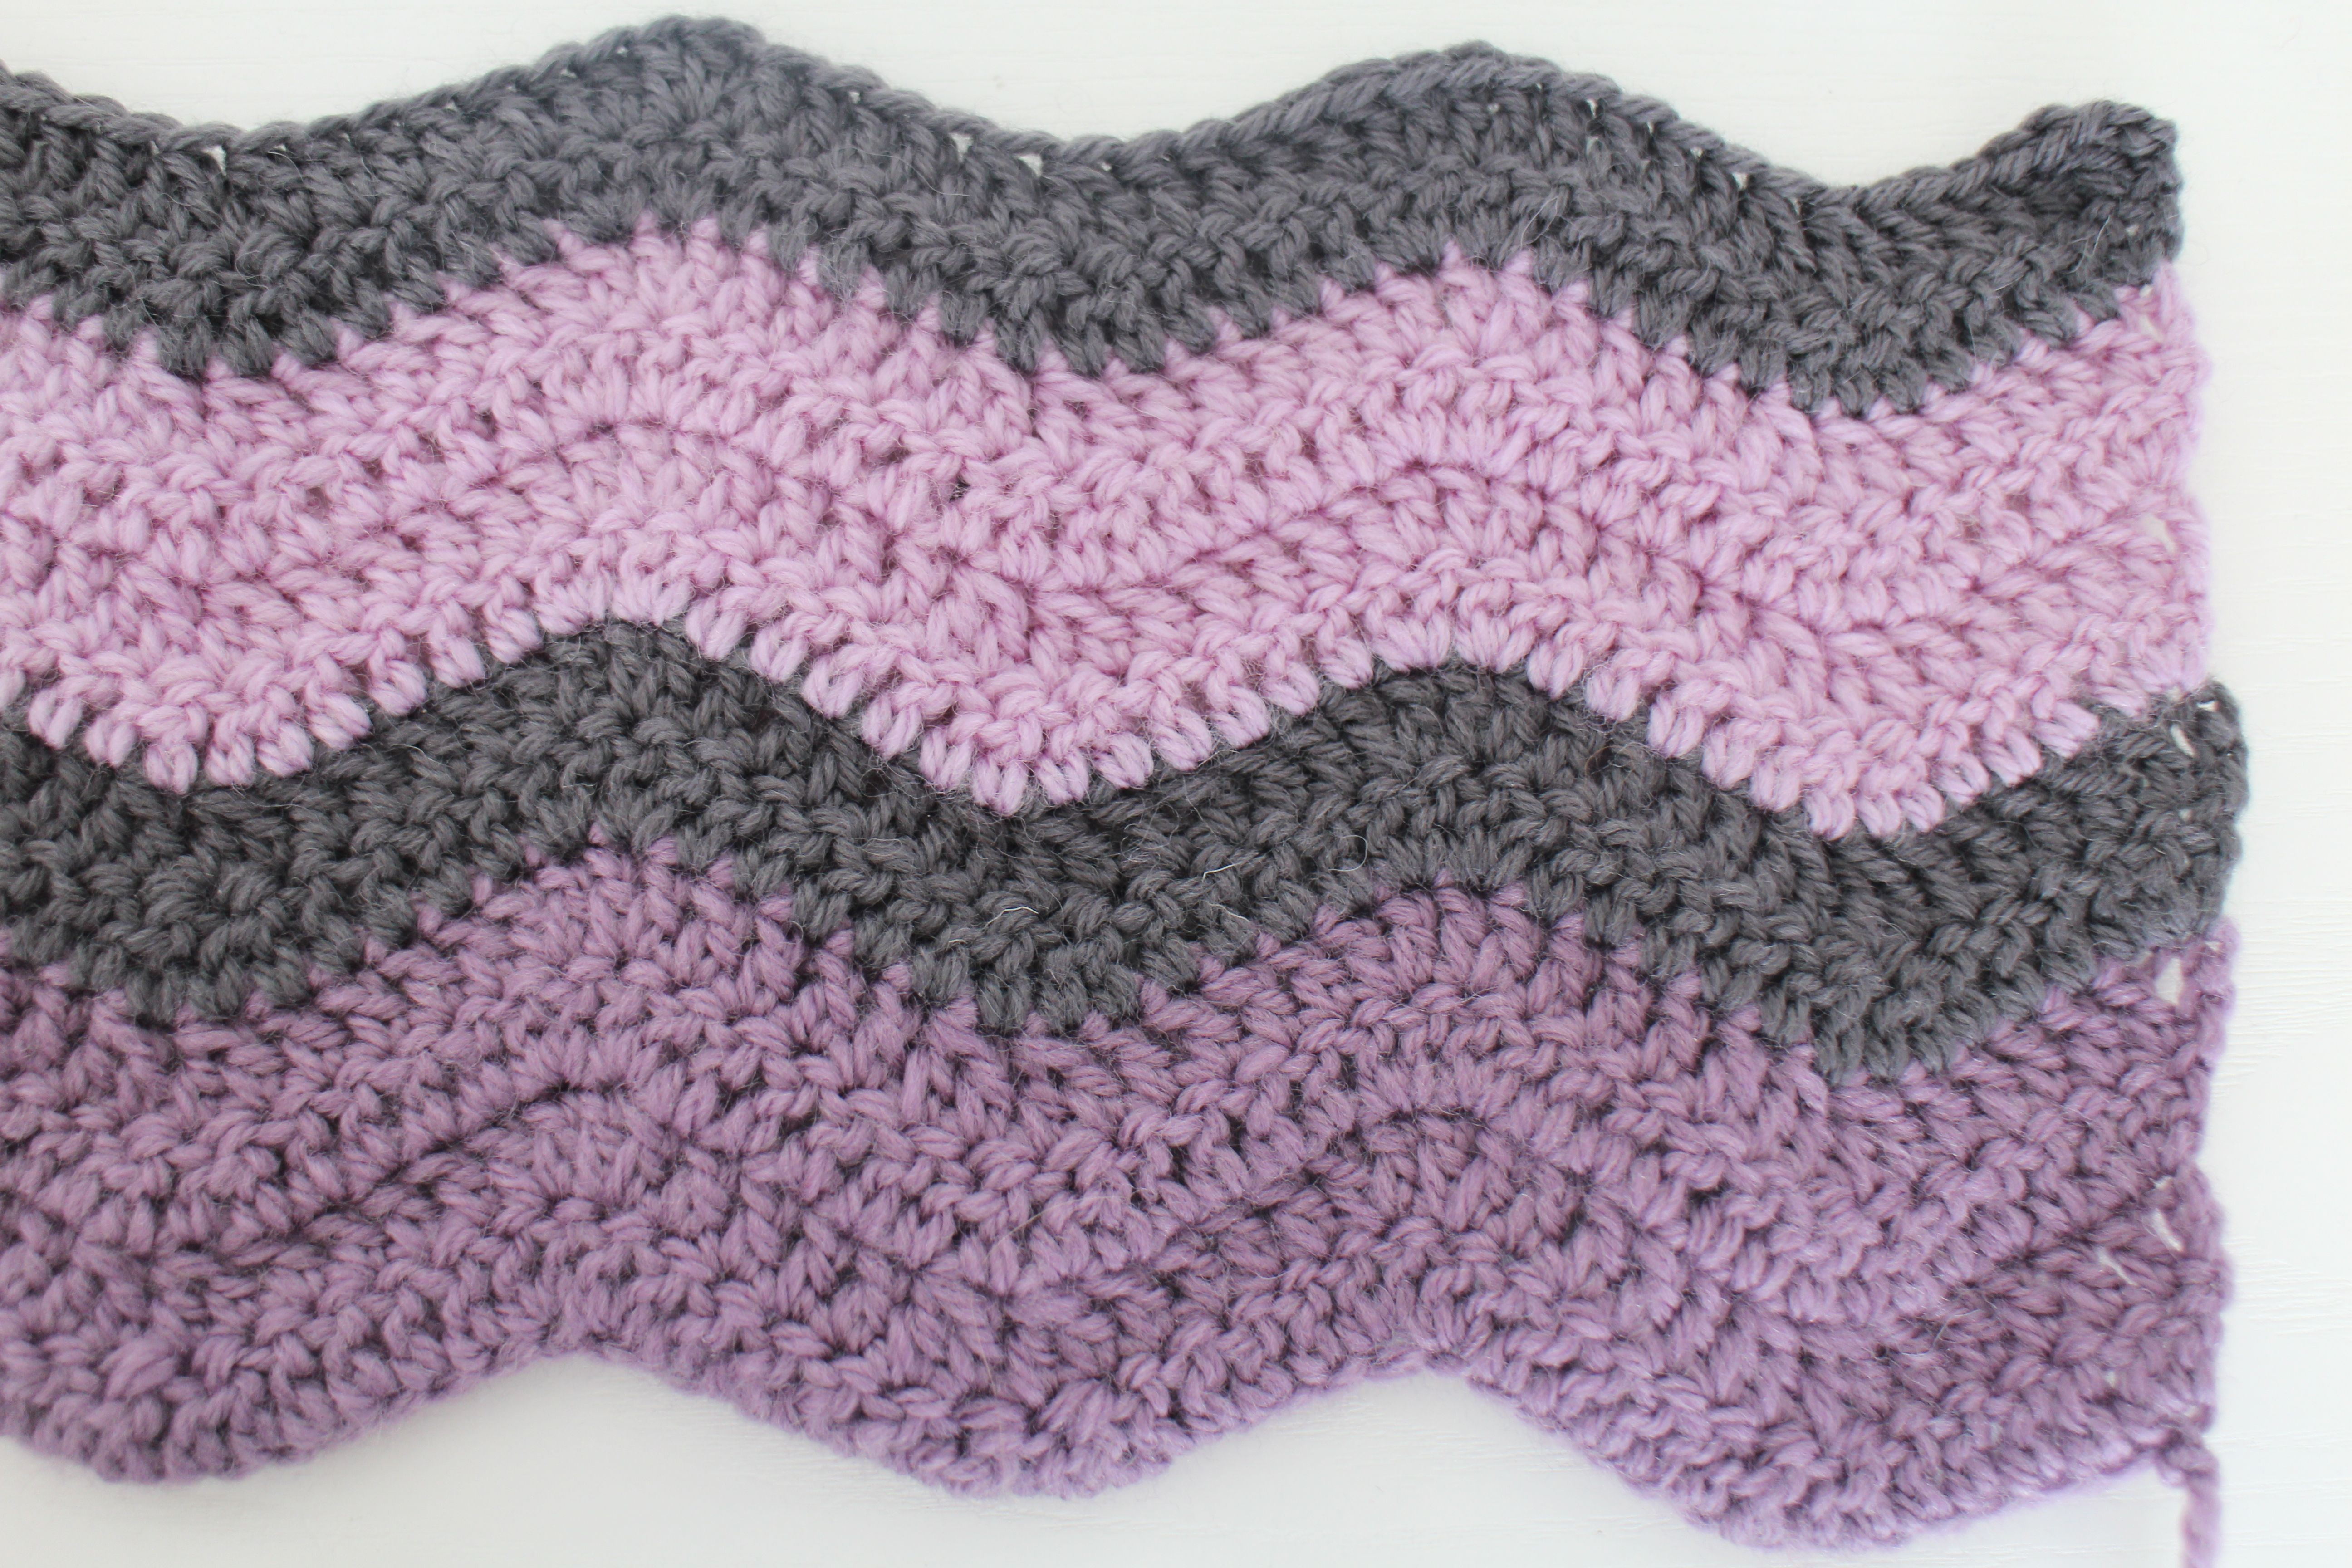 Crochet Chevron Baby Blanket Free Pattern Crochet Ripple Ba Blanket Pattern Bitcoin